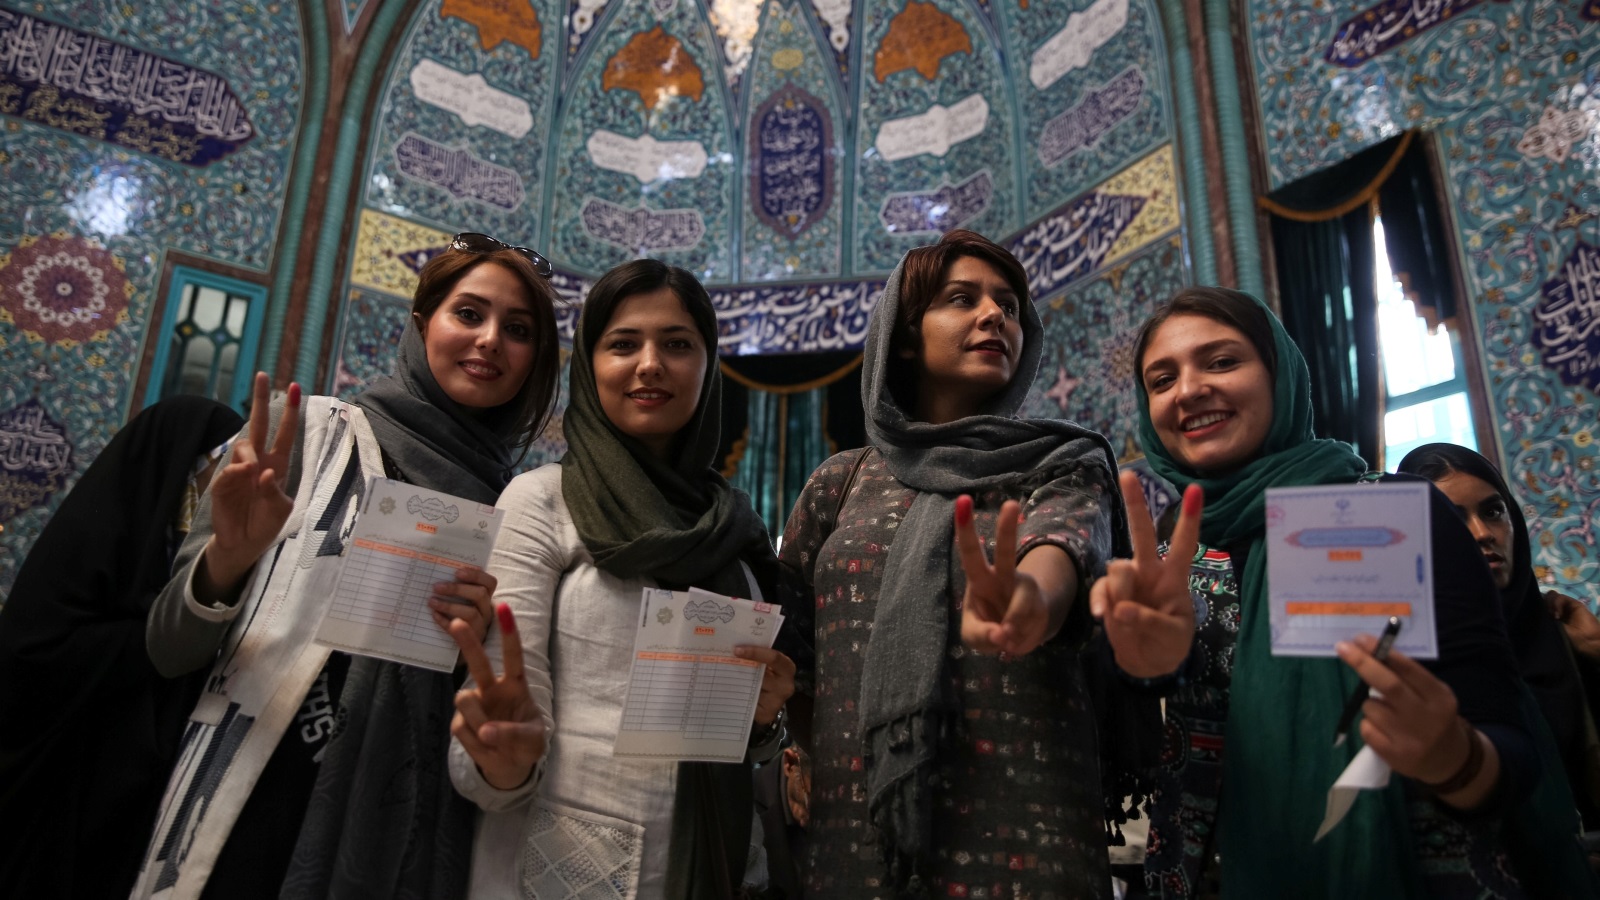  المرأة الإيرانية في الانتخابات الرئاسية الأخيرة  (مايو 2017) (رويترز)